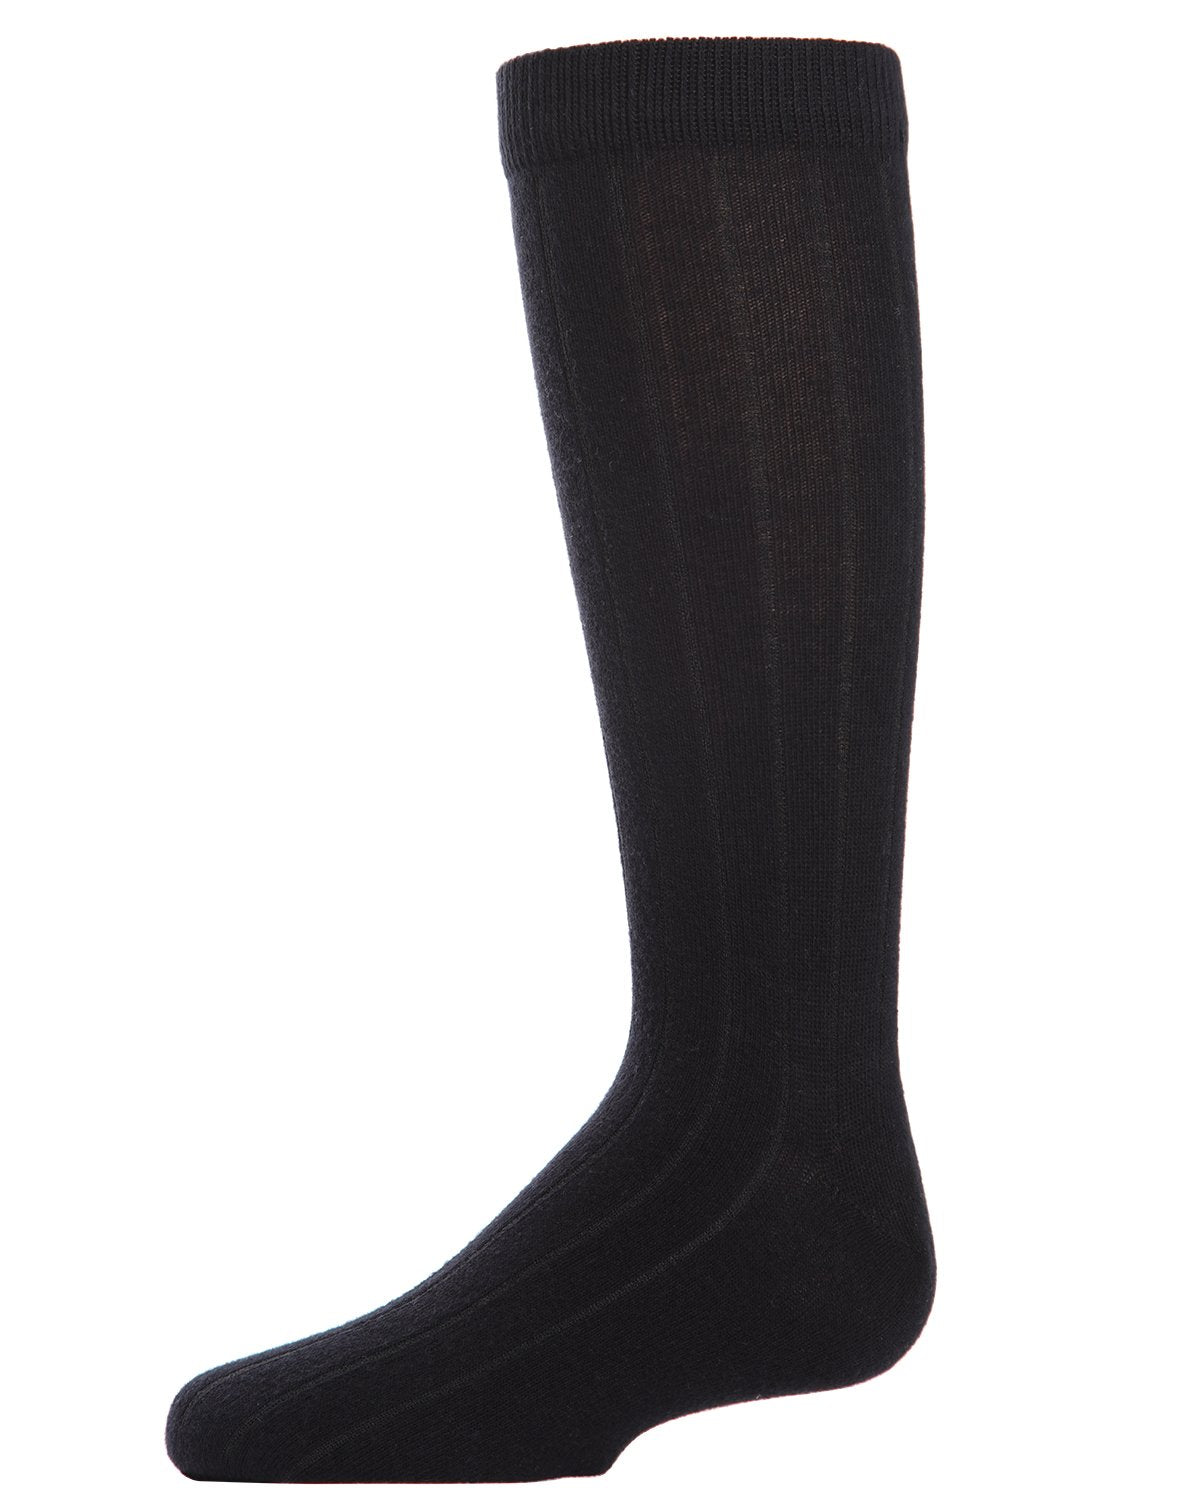 MeMoi Boys Cotton Dress Socks 3-Pack Navy 9-11 - image 4 of 7